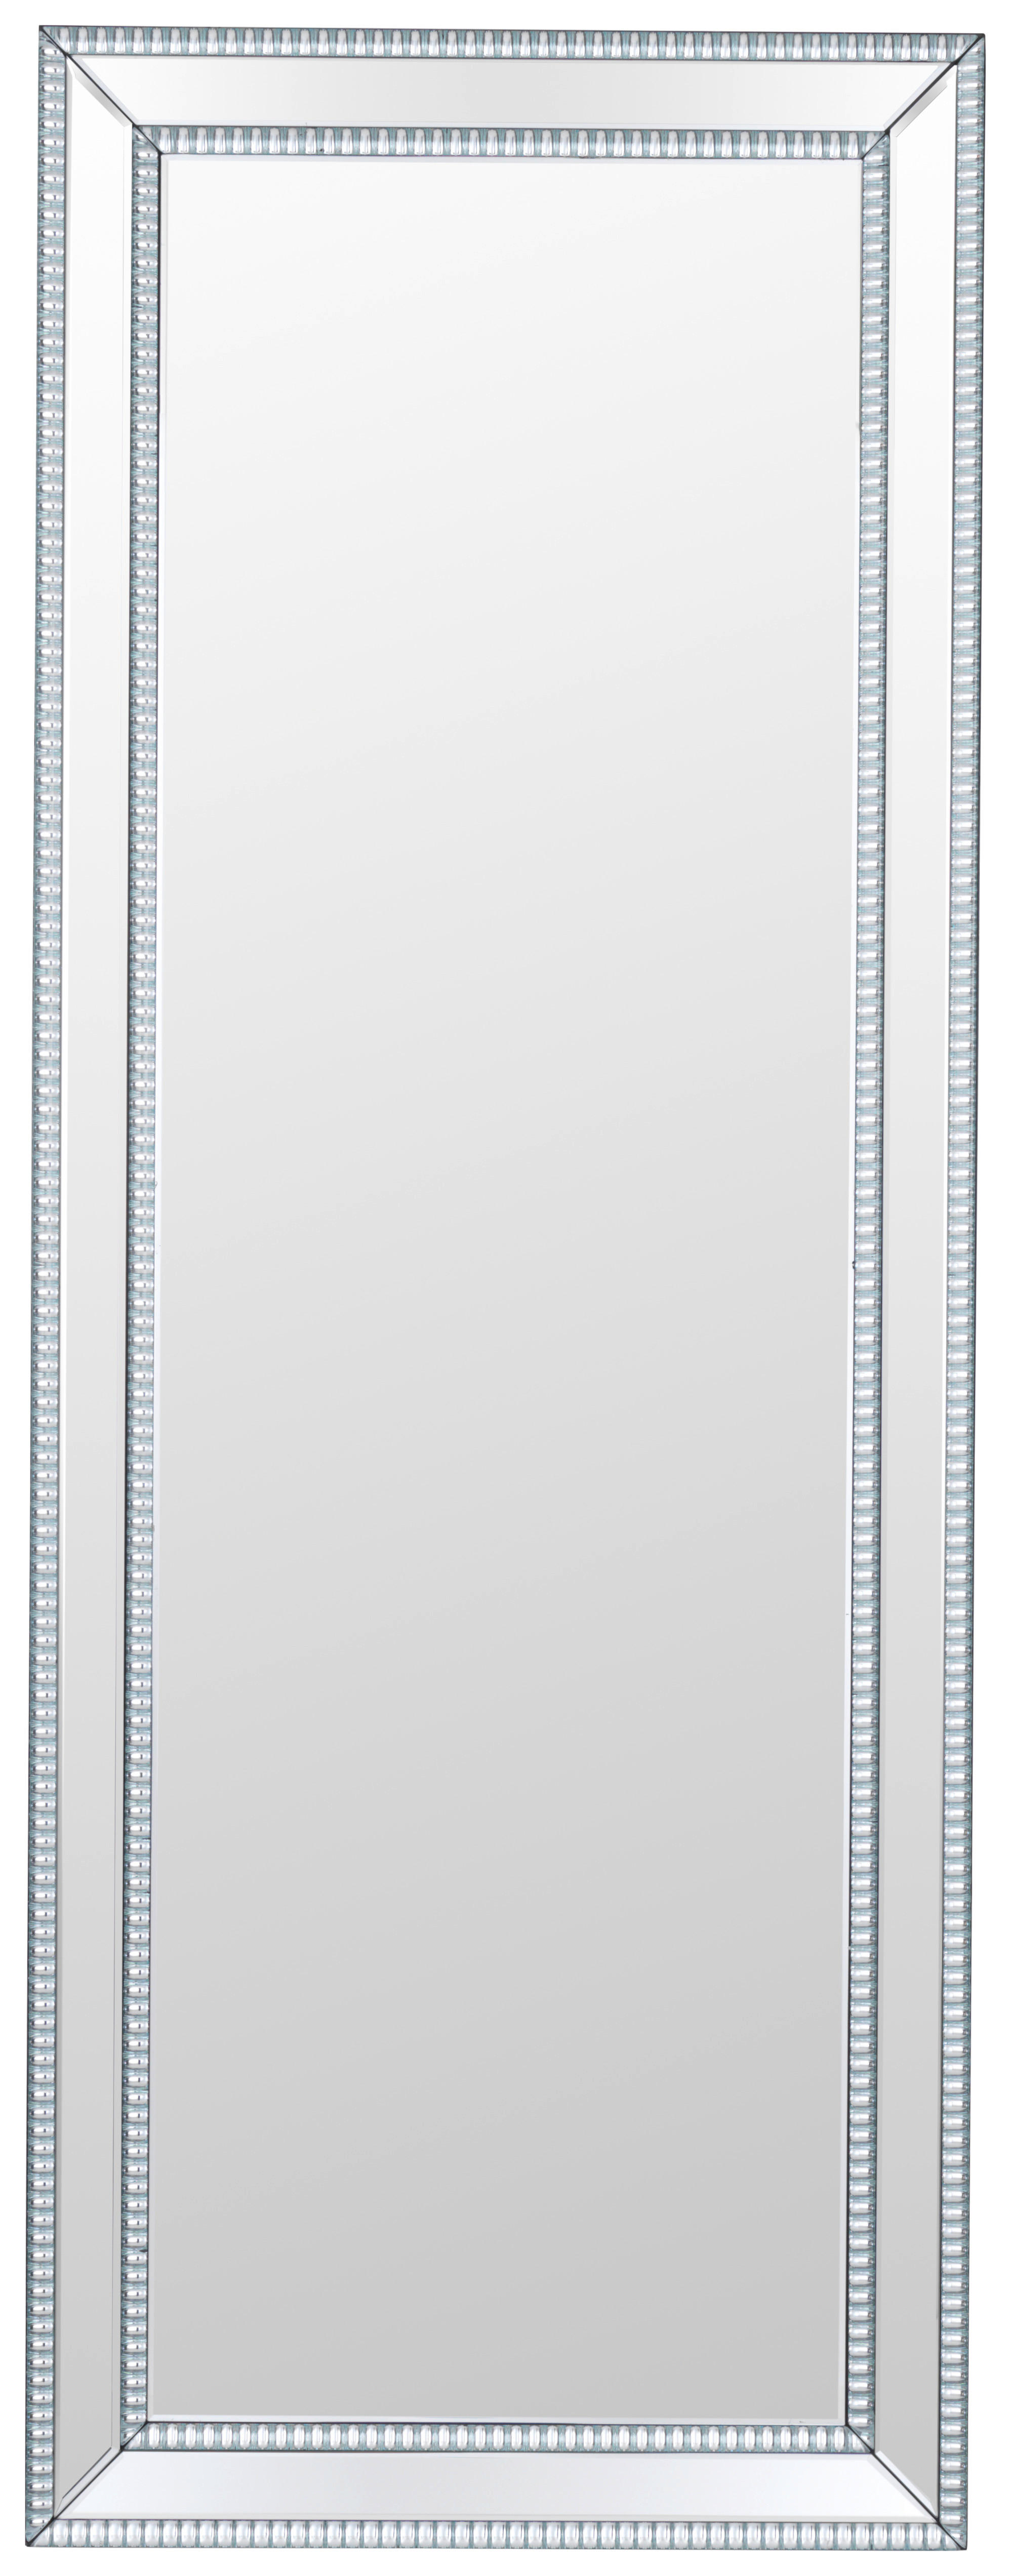 Xora NÁSTĚNNÉ ZRCADLO 60/160/4 cm - barvy stříbra